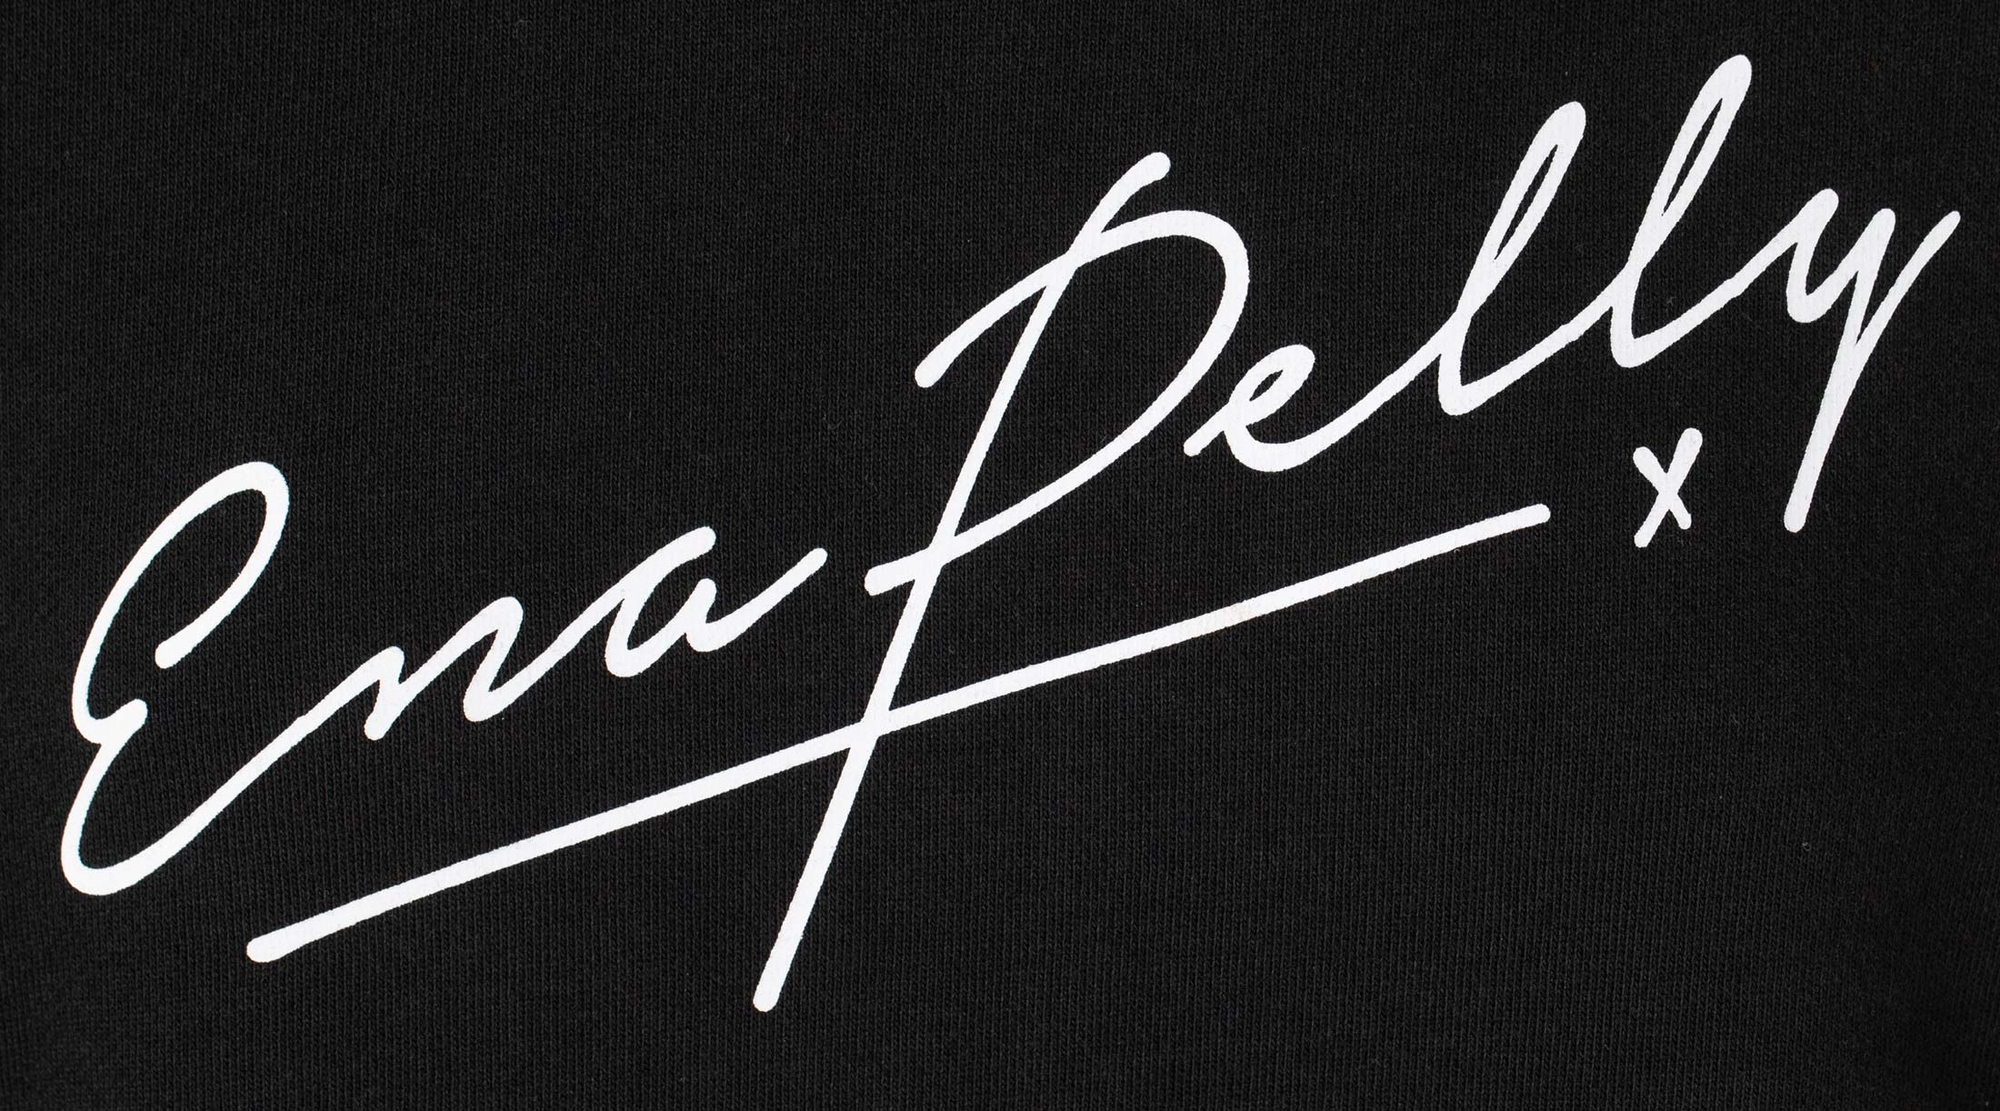 Ena Pelly Script Signature Wordmark - T-Shirt Graphic | Atollon - a design company